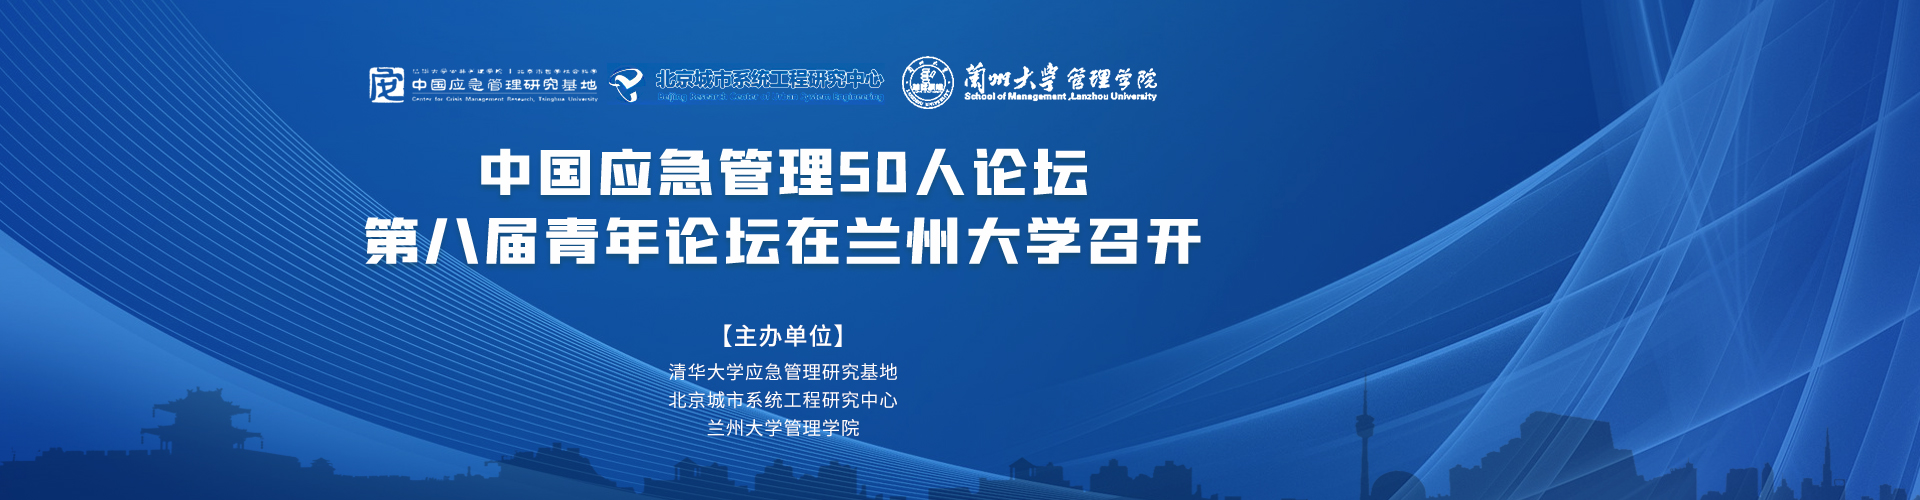 中国应急管理50人论坛·第八届青年论坛在兰州大学召开